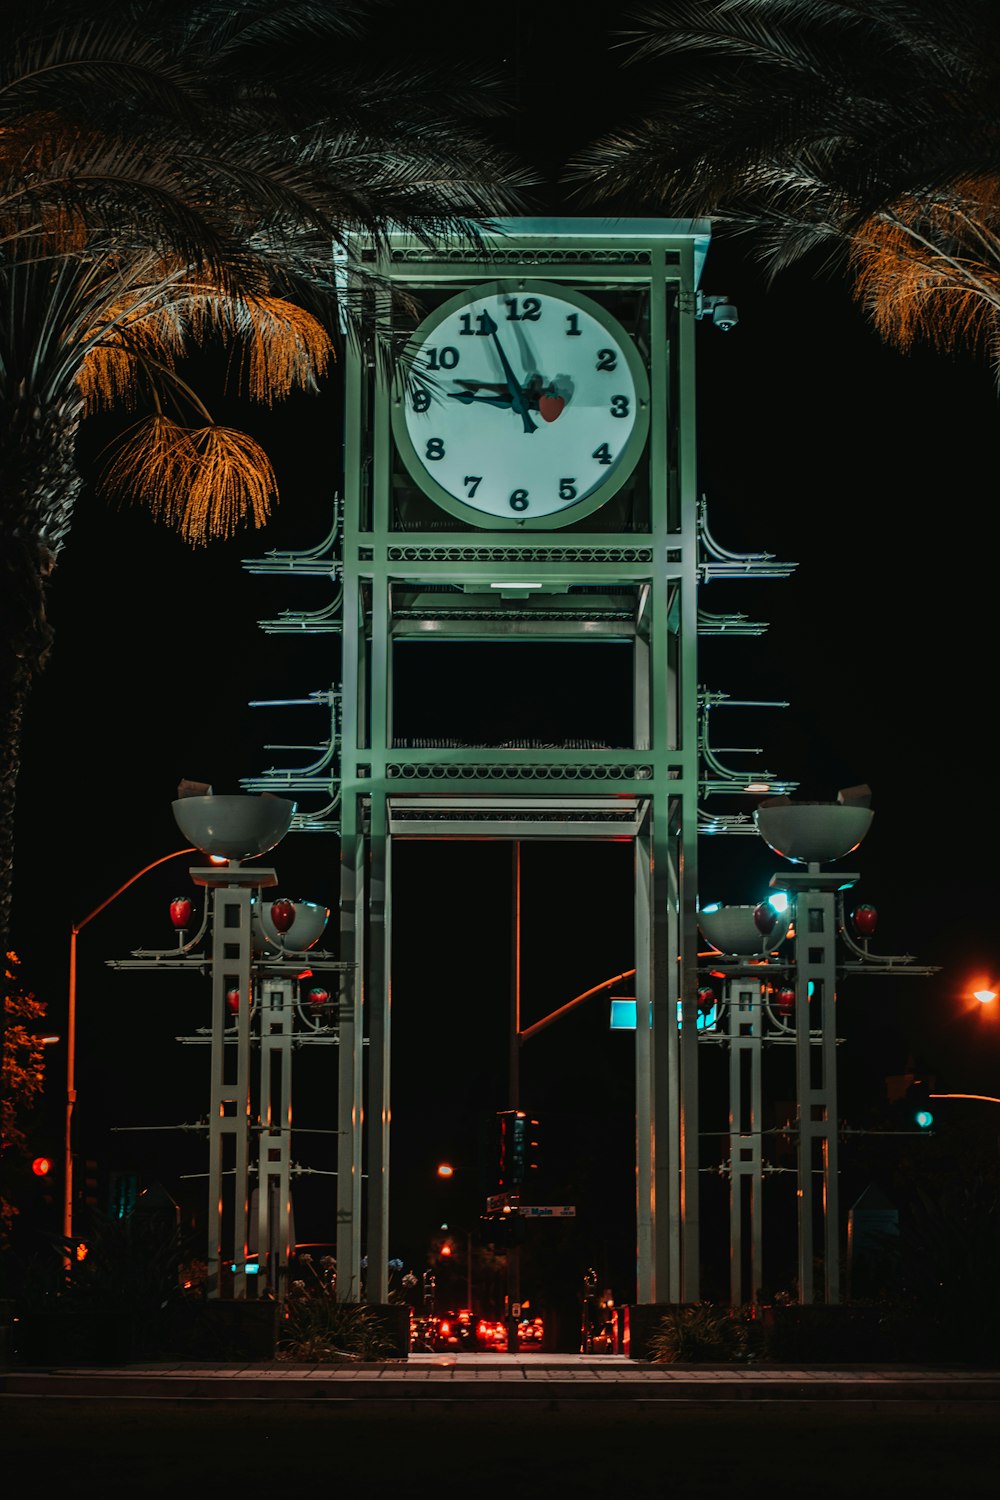 Foto zum Thema Uhr um 9:50 – Kostenloses Bild zu Turm auf Unsplash